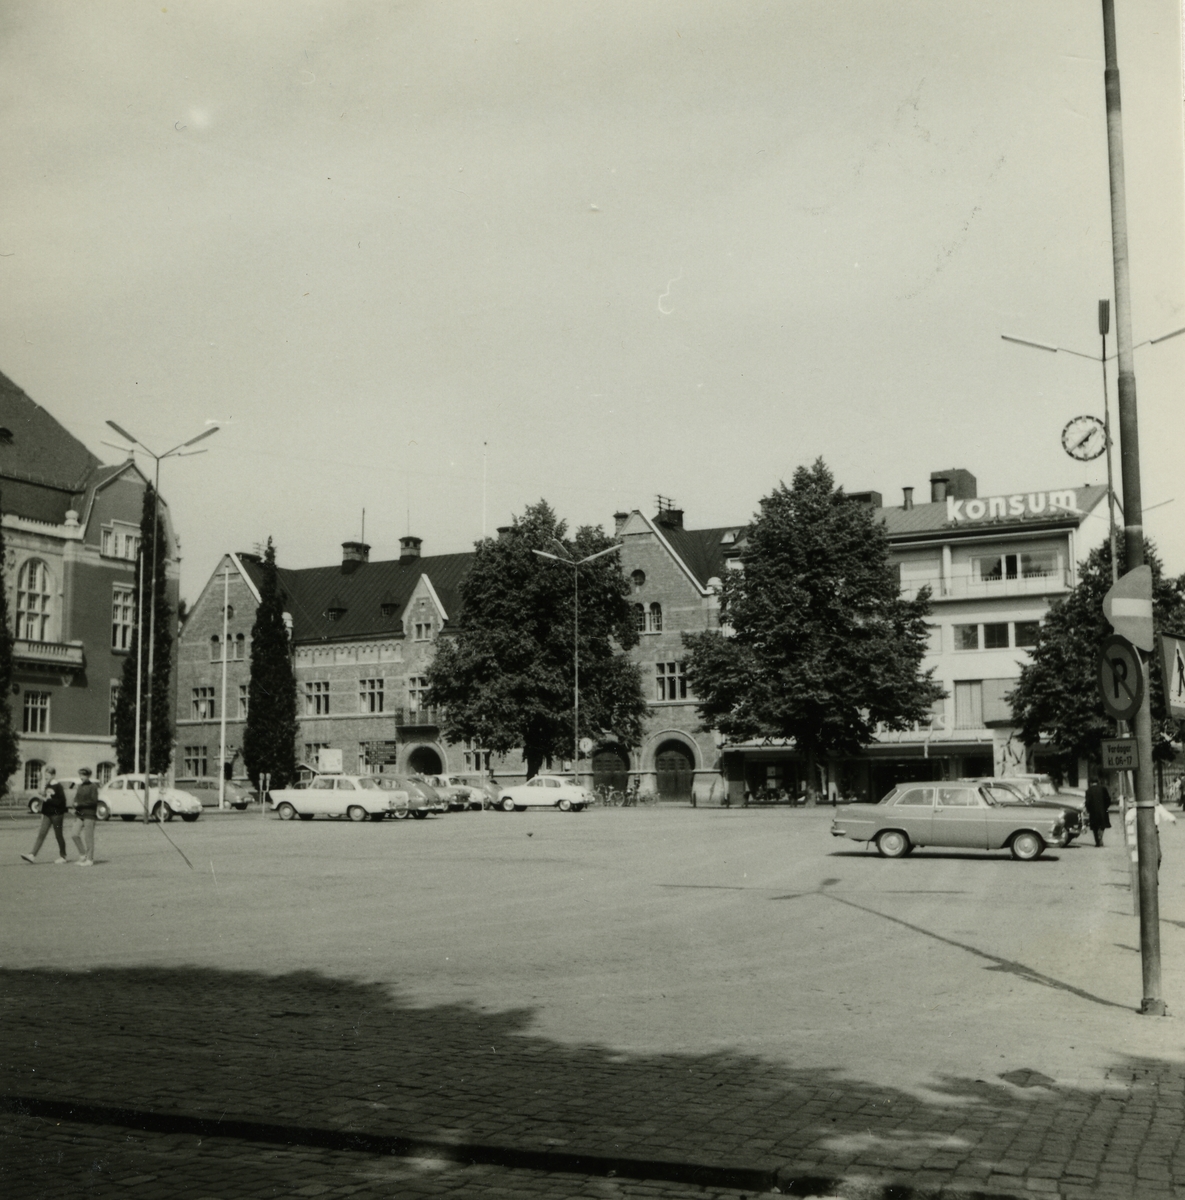 Västerås. Stora torget med Erik Hahrs Brandstation/polishus och Konsum. 1964.